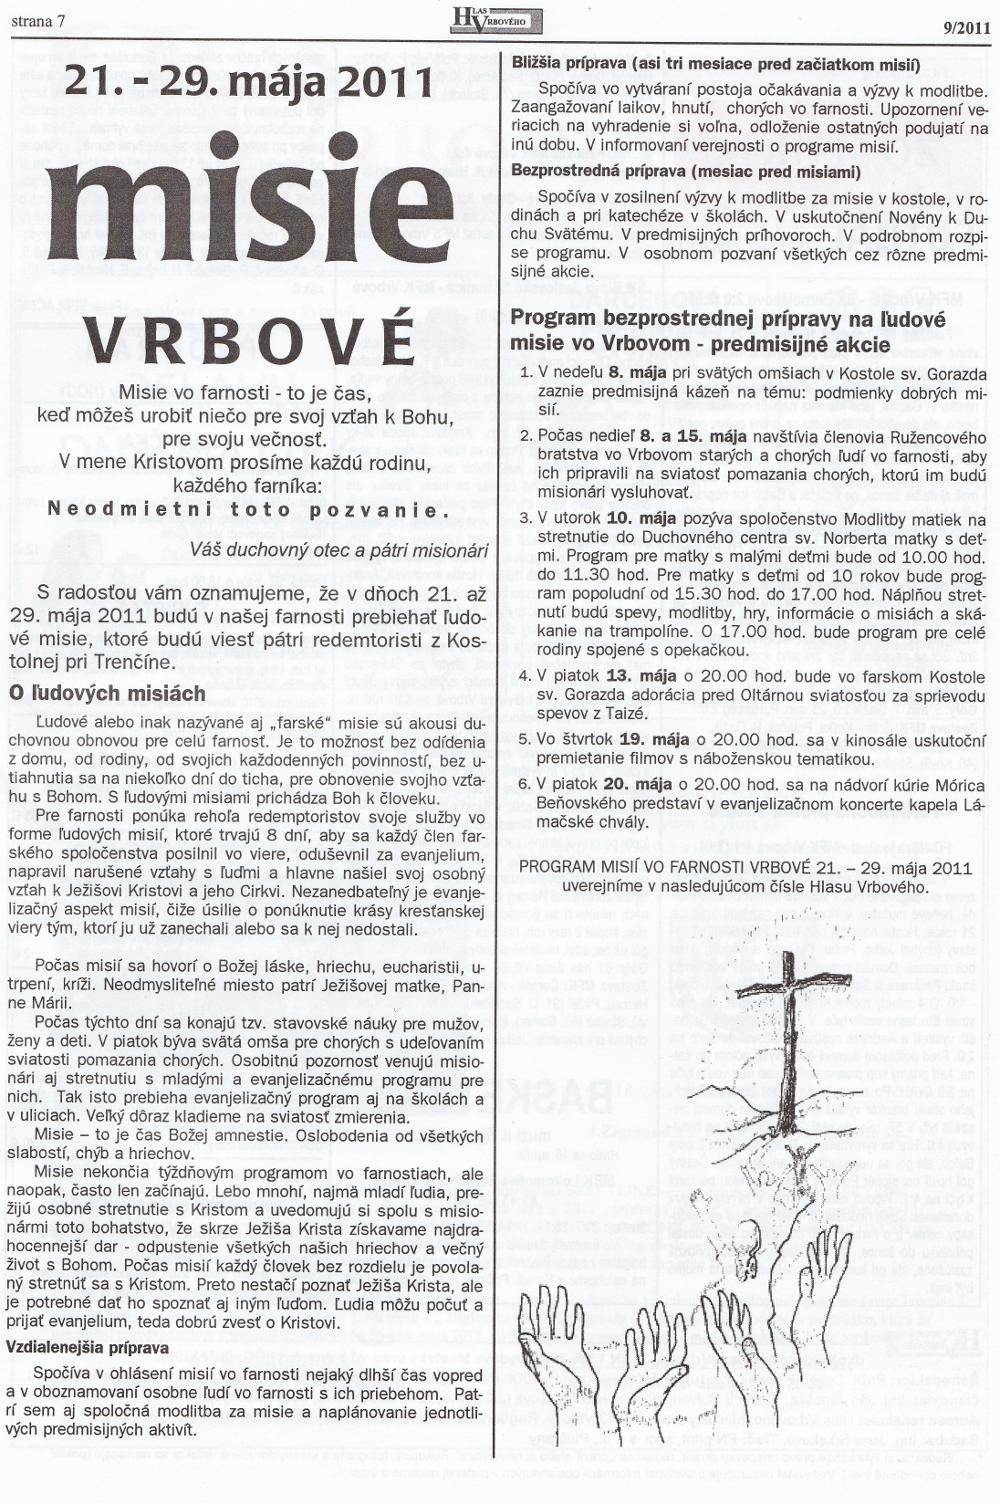 Hlas Vrbového 09/2011, strana 7